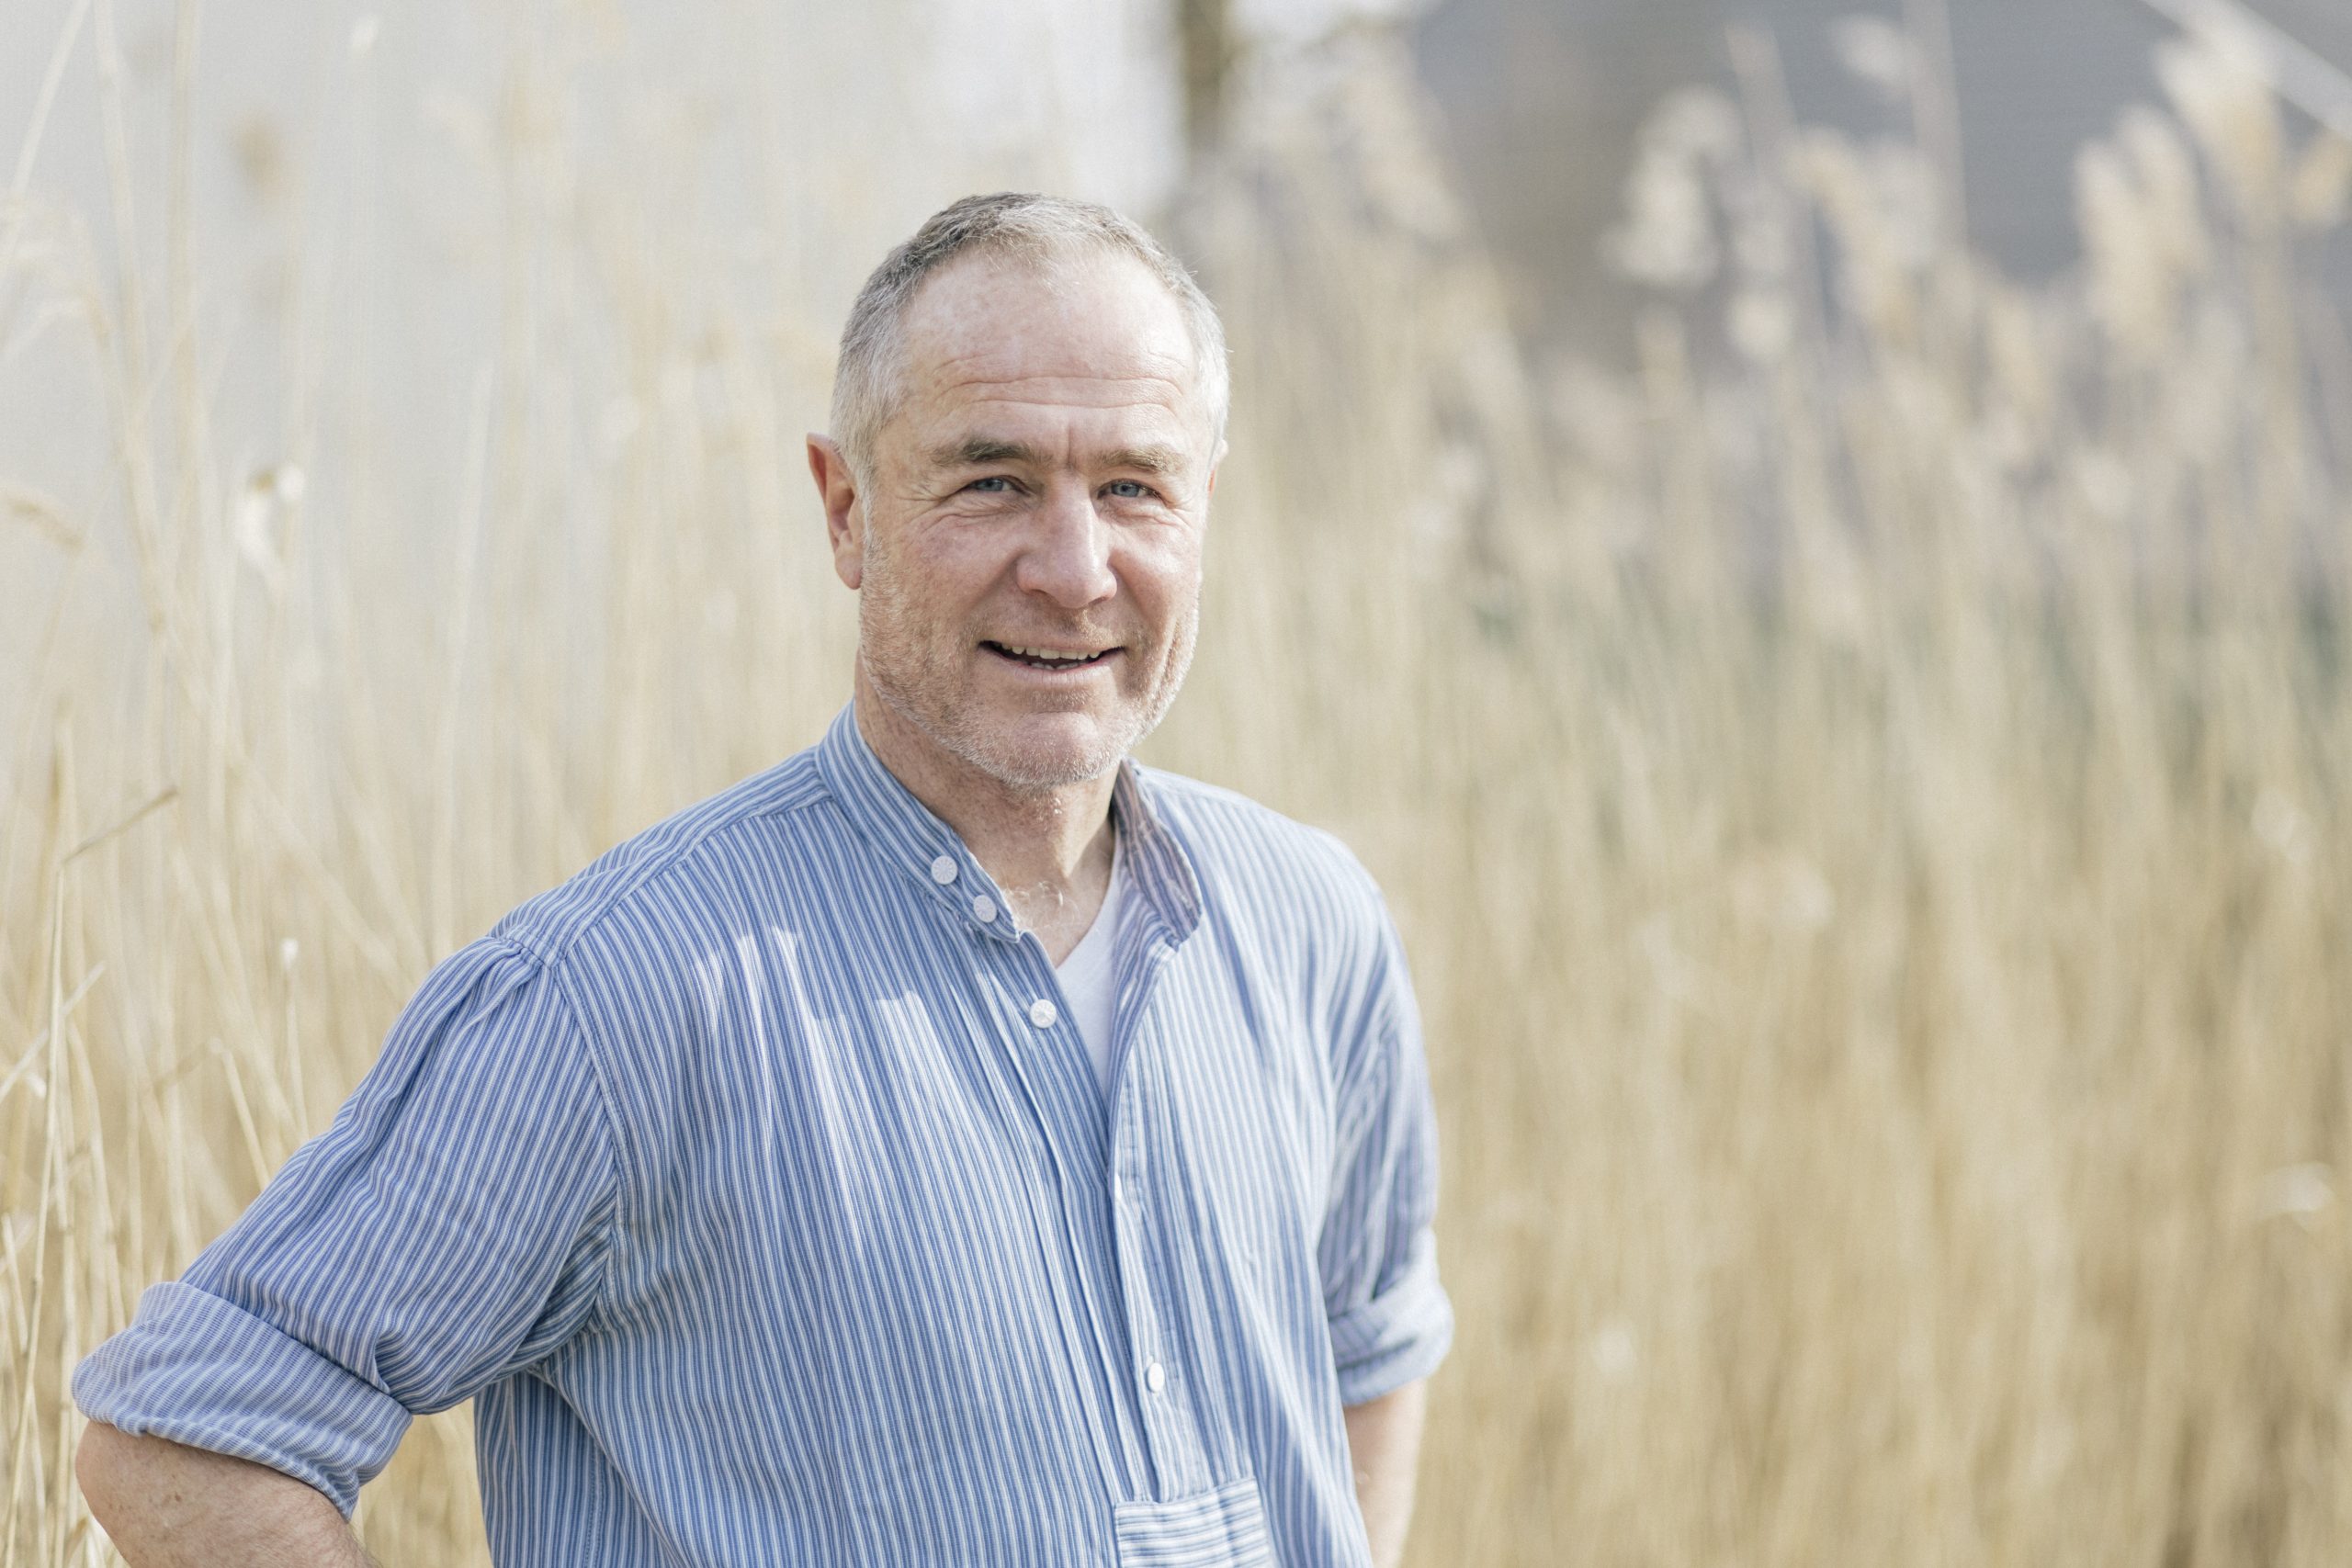 Porträtfoto von WindRat-Projektmanager Peter Keller, Nahaufnahme mit hellblauem Hemd in einem Feld.